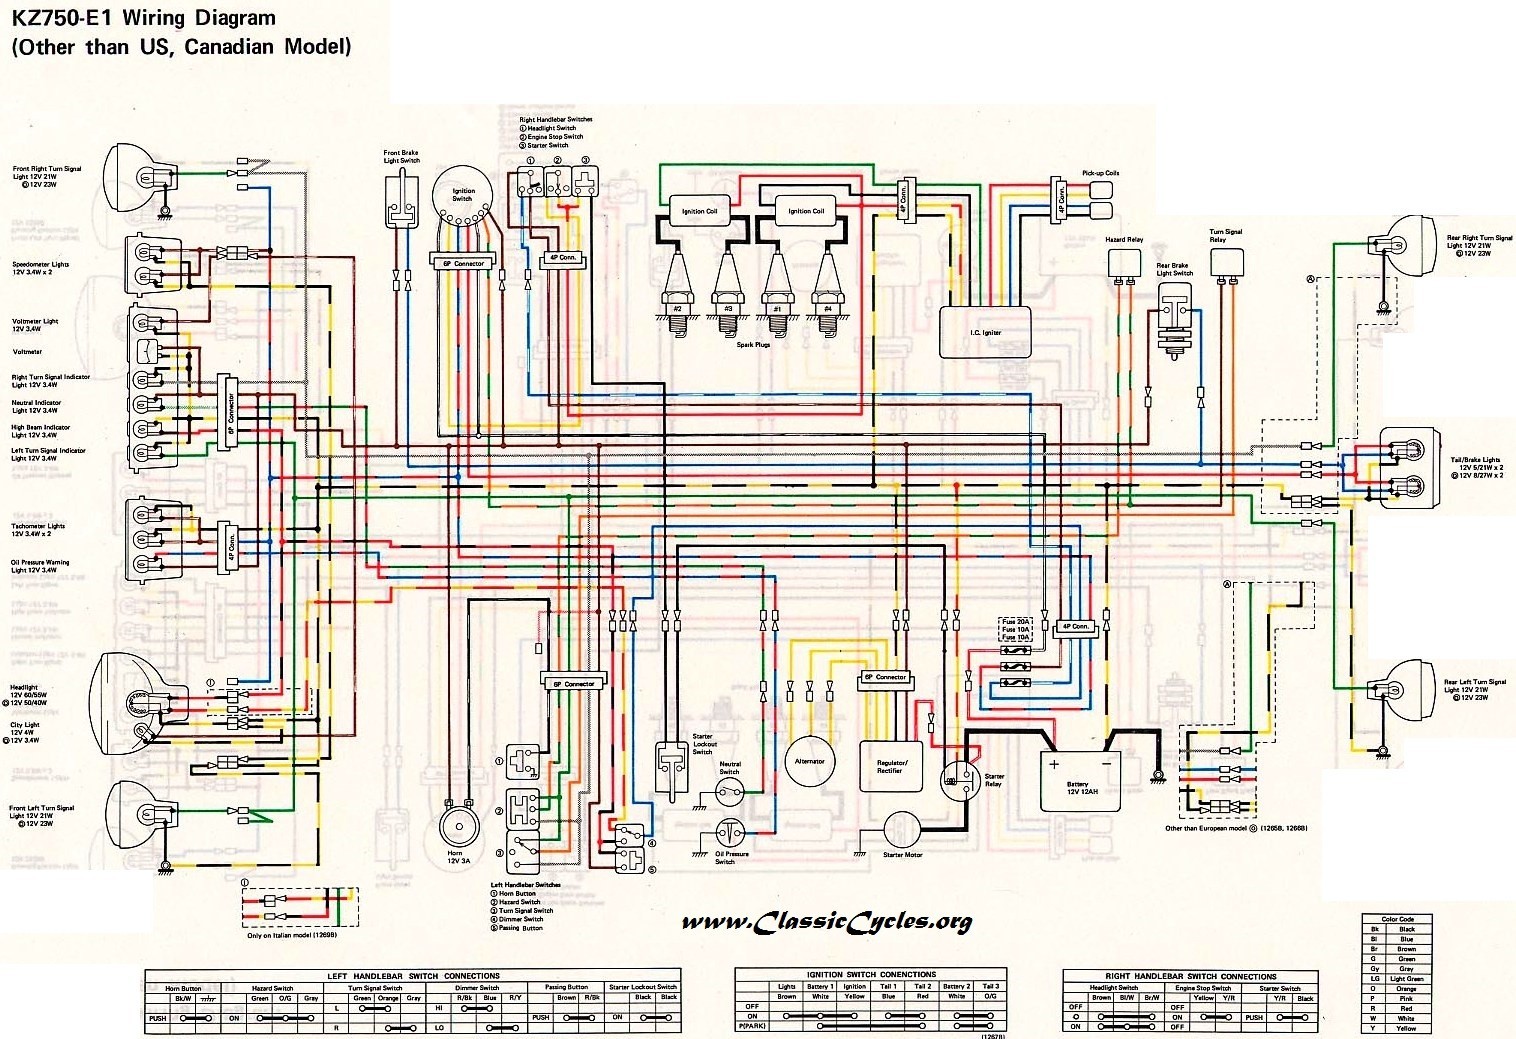 1981 kawasaki 440 ltd wiring diagram luxury kawasaki 440 engine diagram plete wiring diagrams e280a2